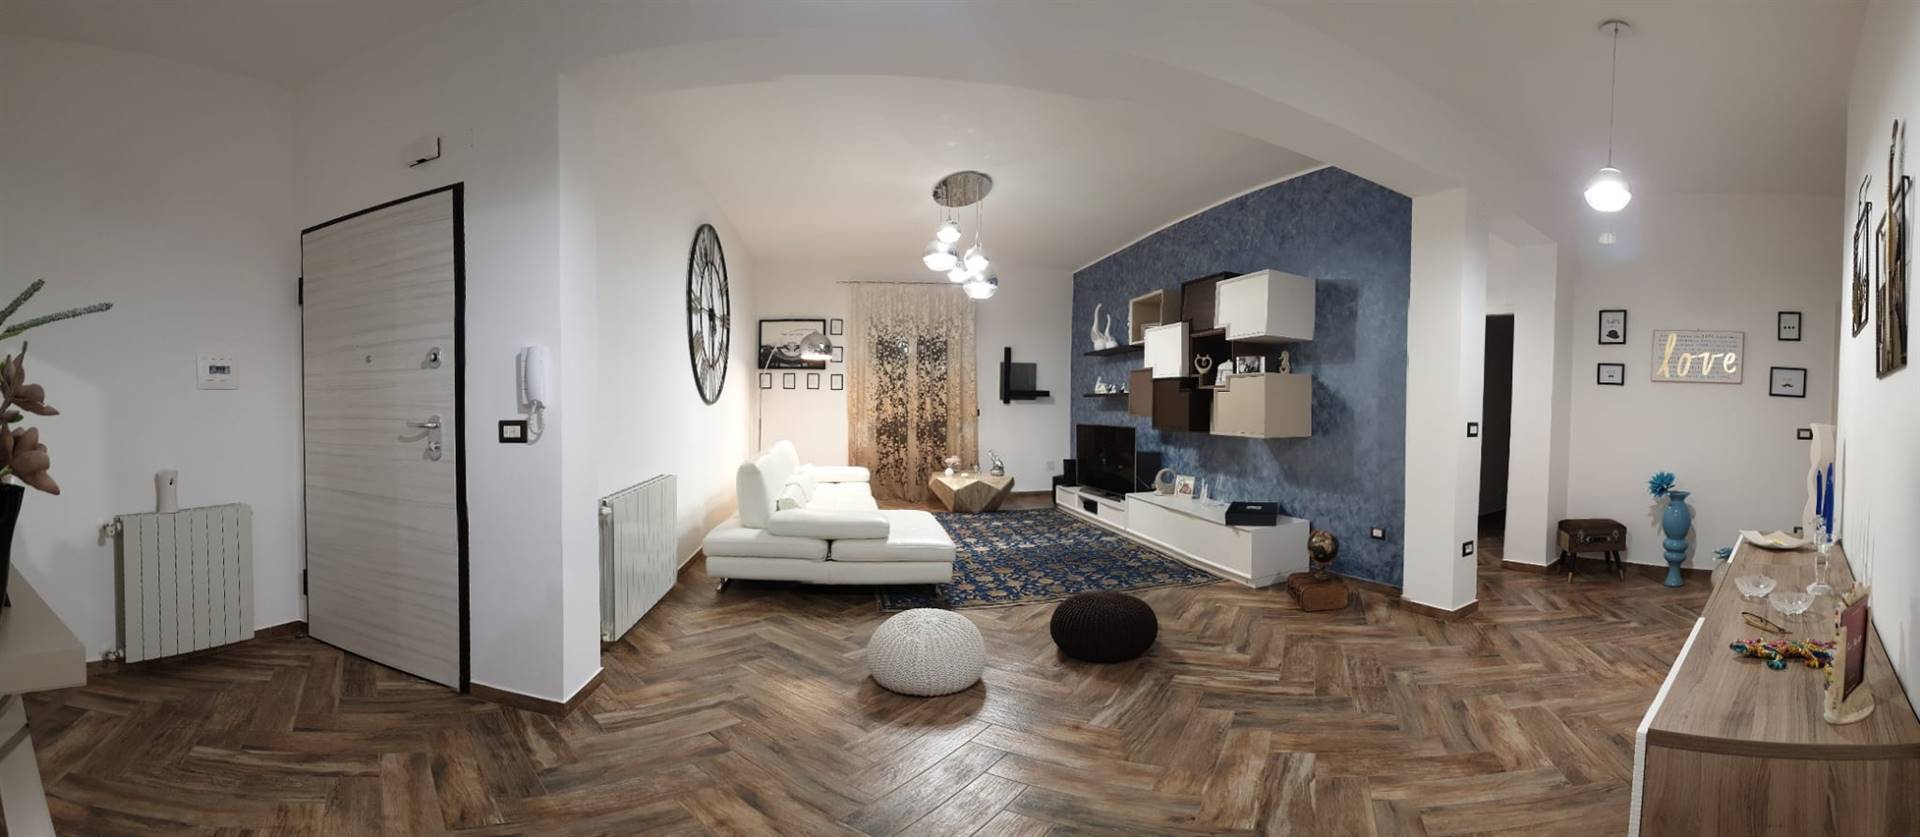 Appartamento in vendita a Campobello di Licata, 8 locali, prezzo € 95.000 | PortaleAgenzieImmobiliari.it